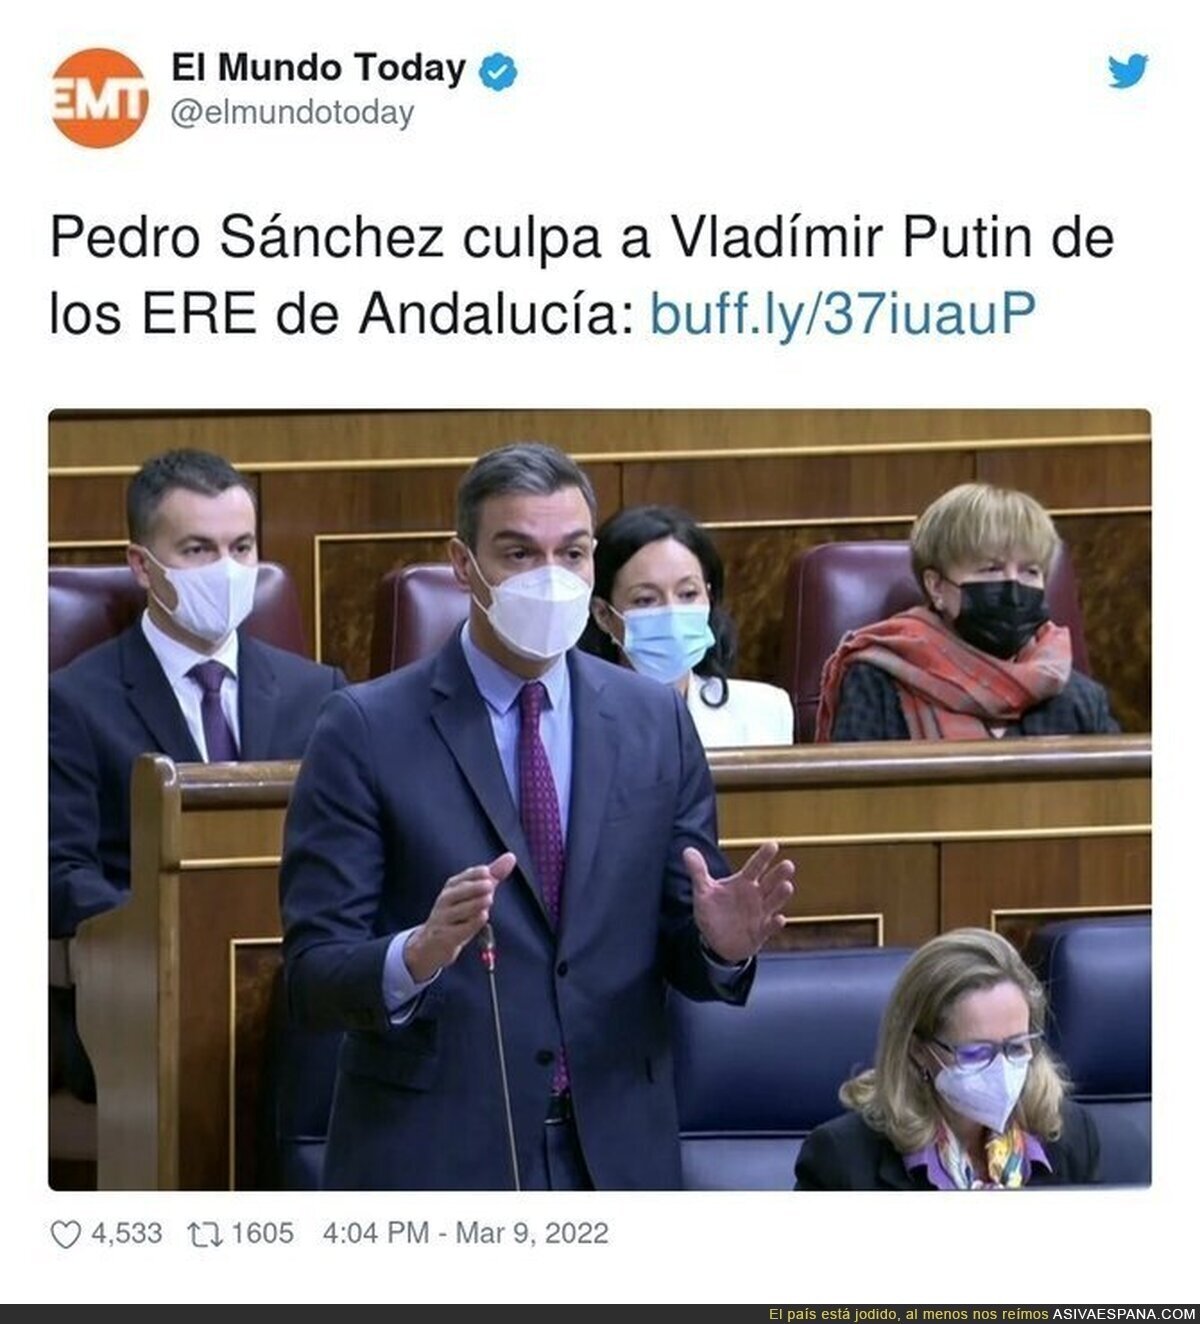 Pedro Sánchez es capaz de todo con tal de no admitir culpa alguna